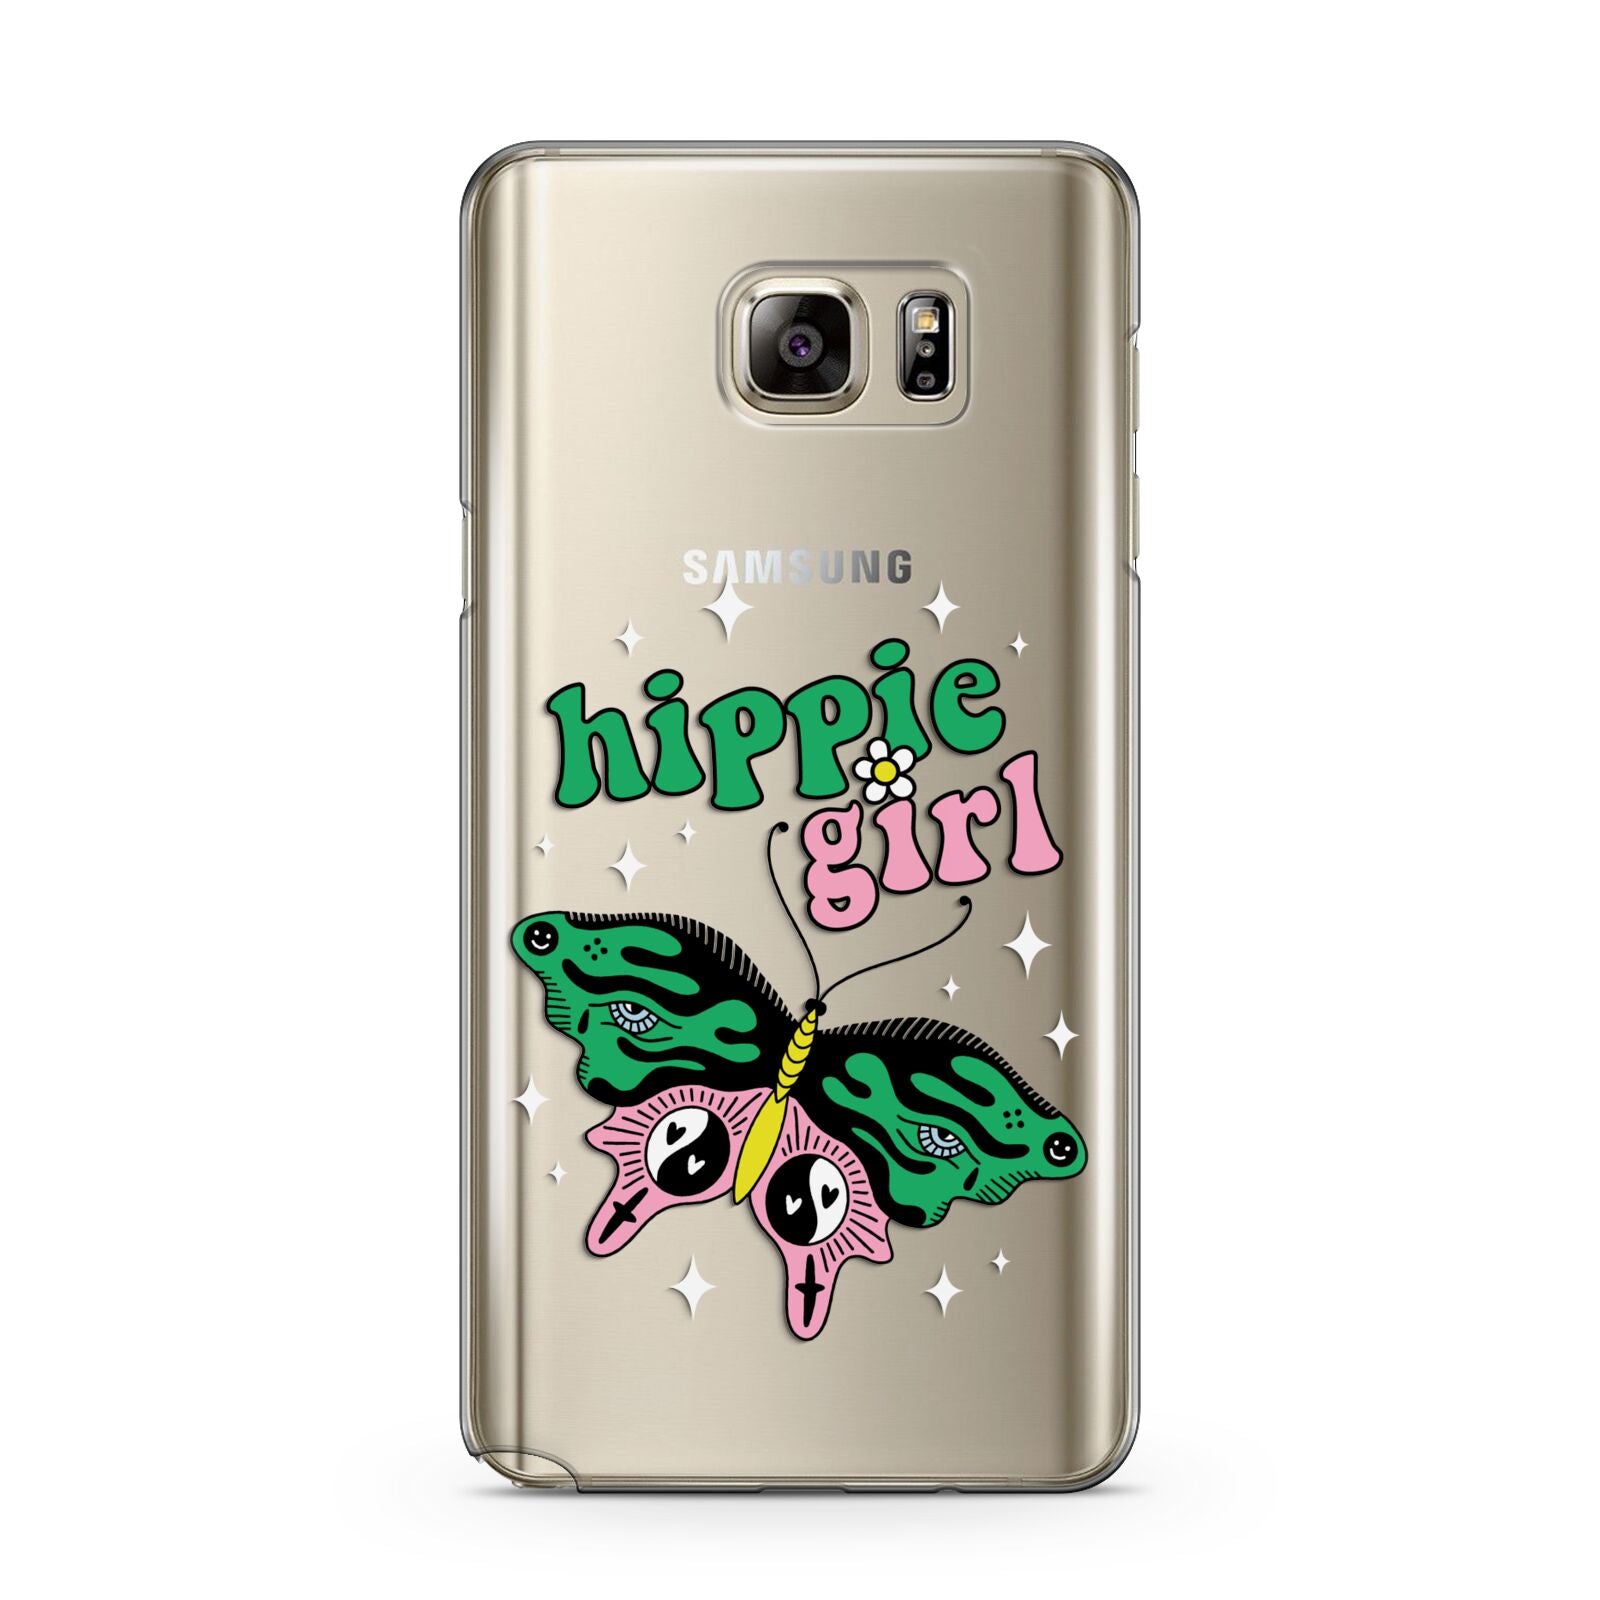 Hippie Girl Samsung Galaxy Note 5 Case